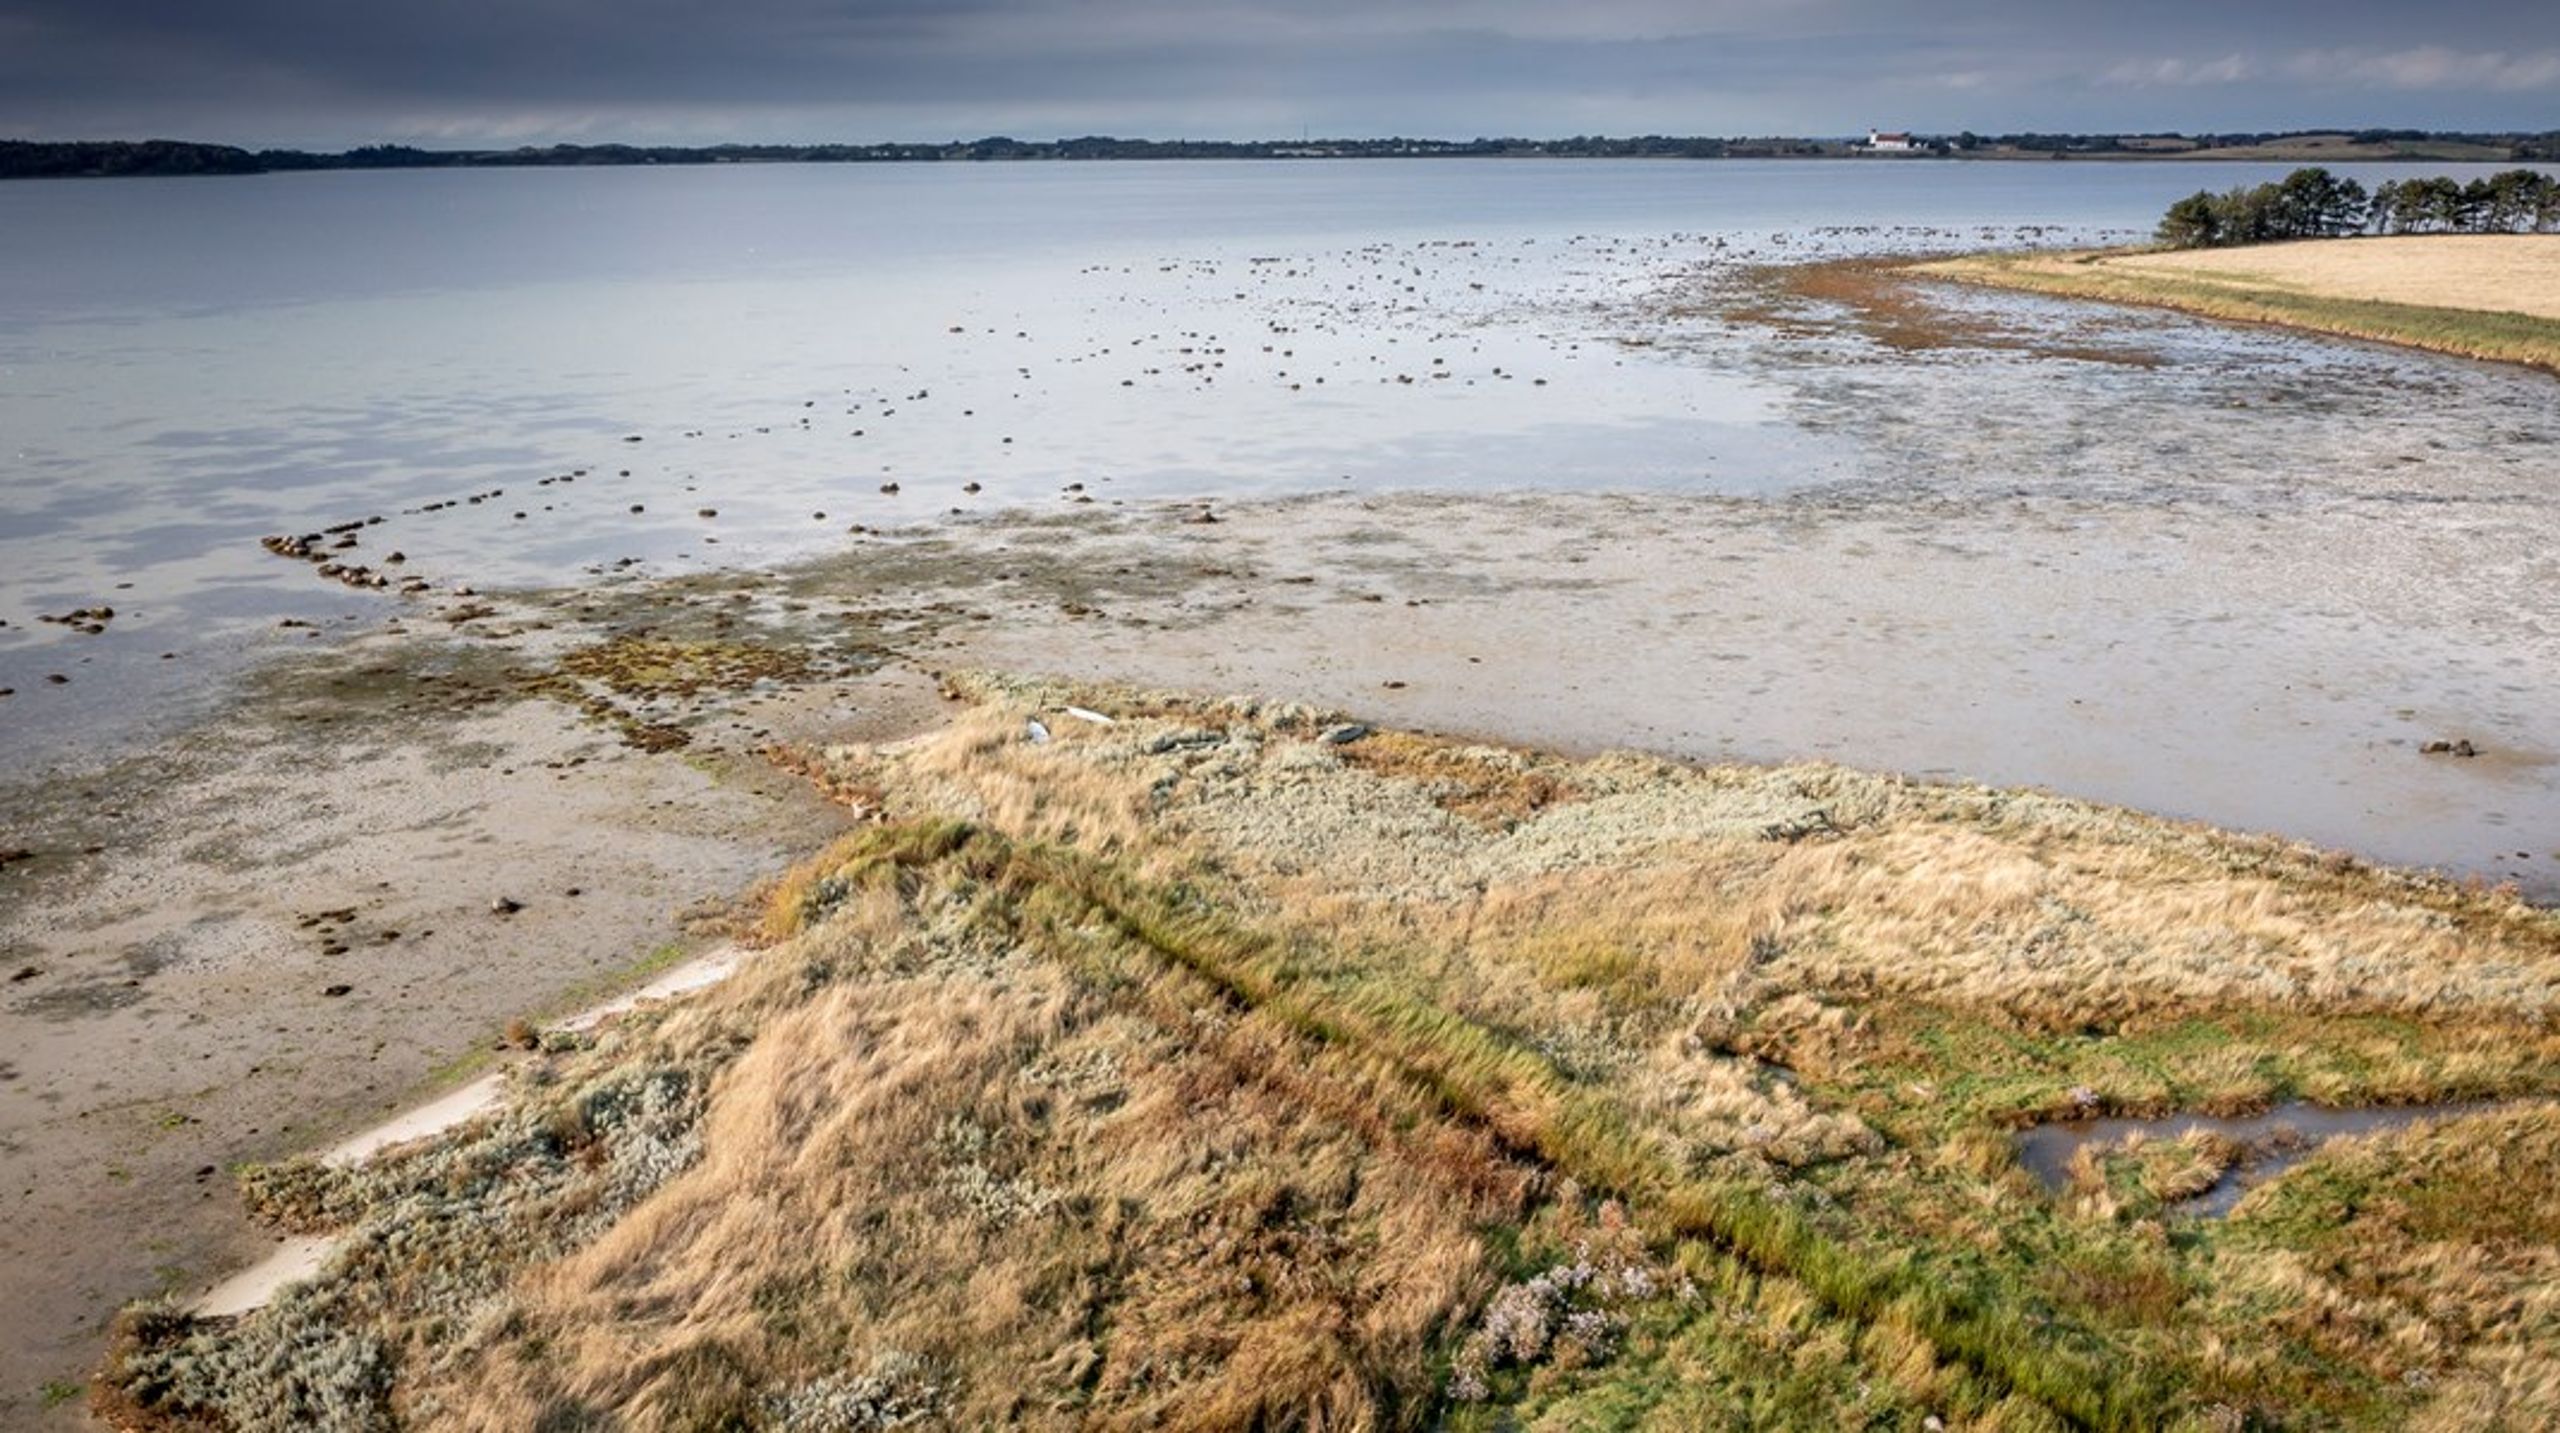 Danmark har noget af det reneste vand i hanerne, men flere og flere uønskede stoffer bliver fundet i grundvandet, og dem skal vi bekæmpe, hvis vi skal bevare den enestående kvalitet, skriver Henrik Garver.